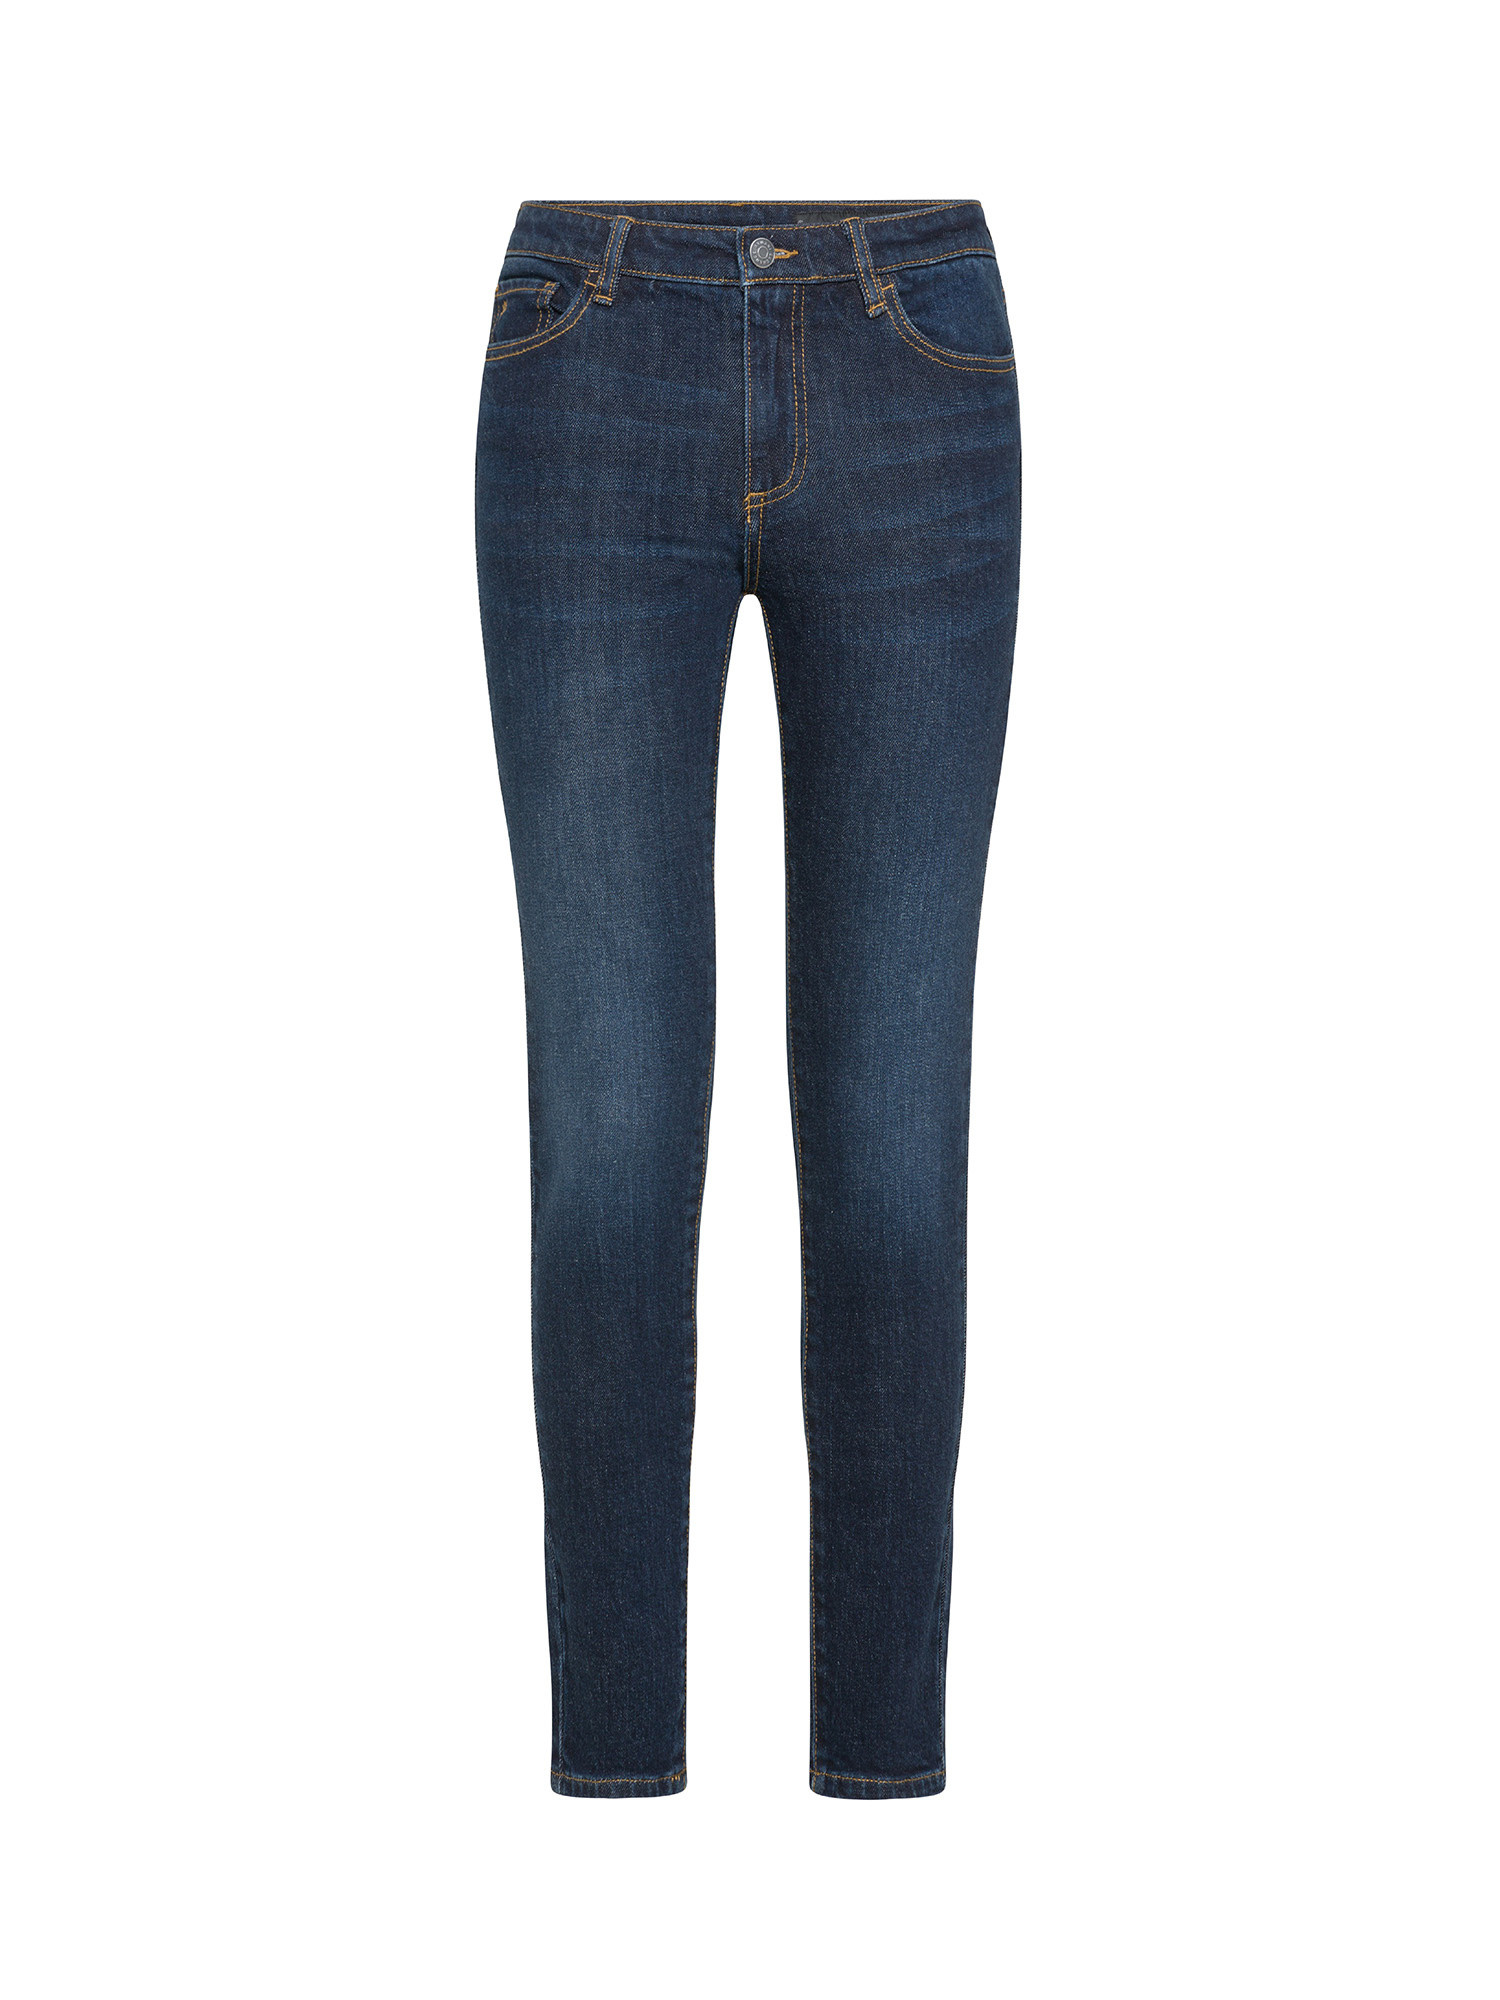 Armani Exchange - Five pocket jeans, Denim, large image number 0